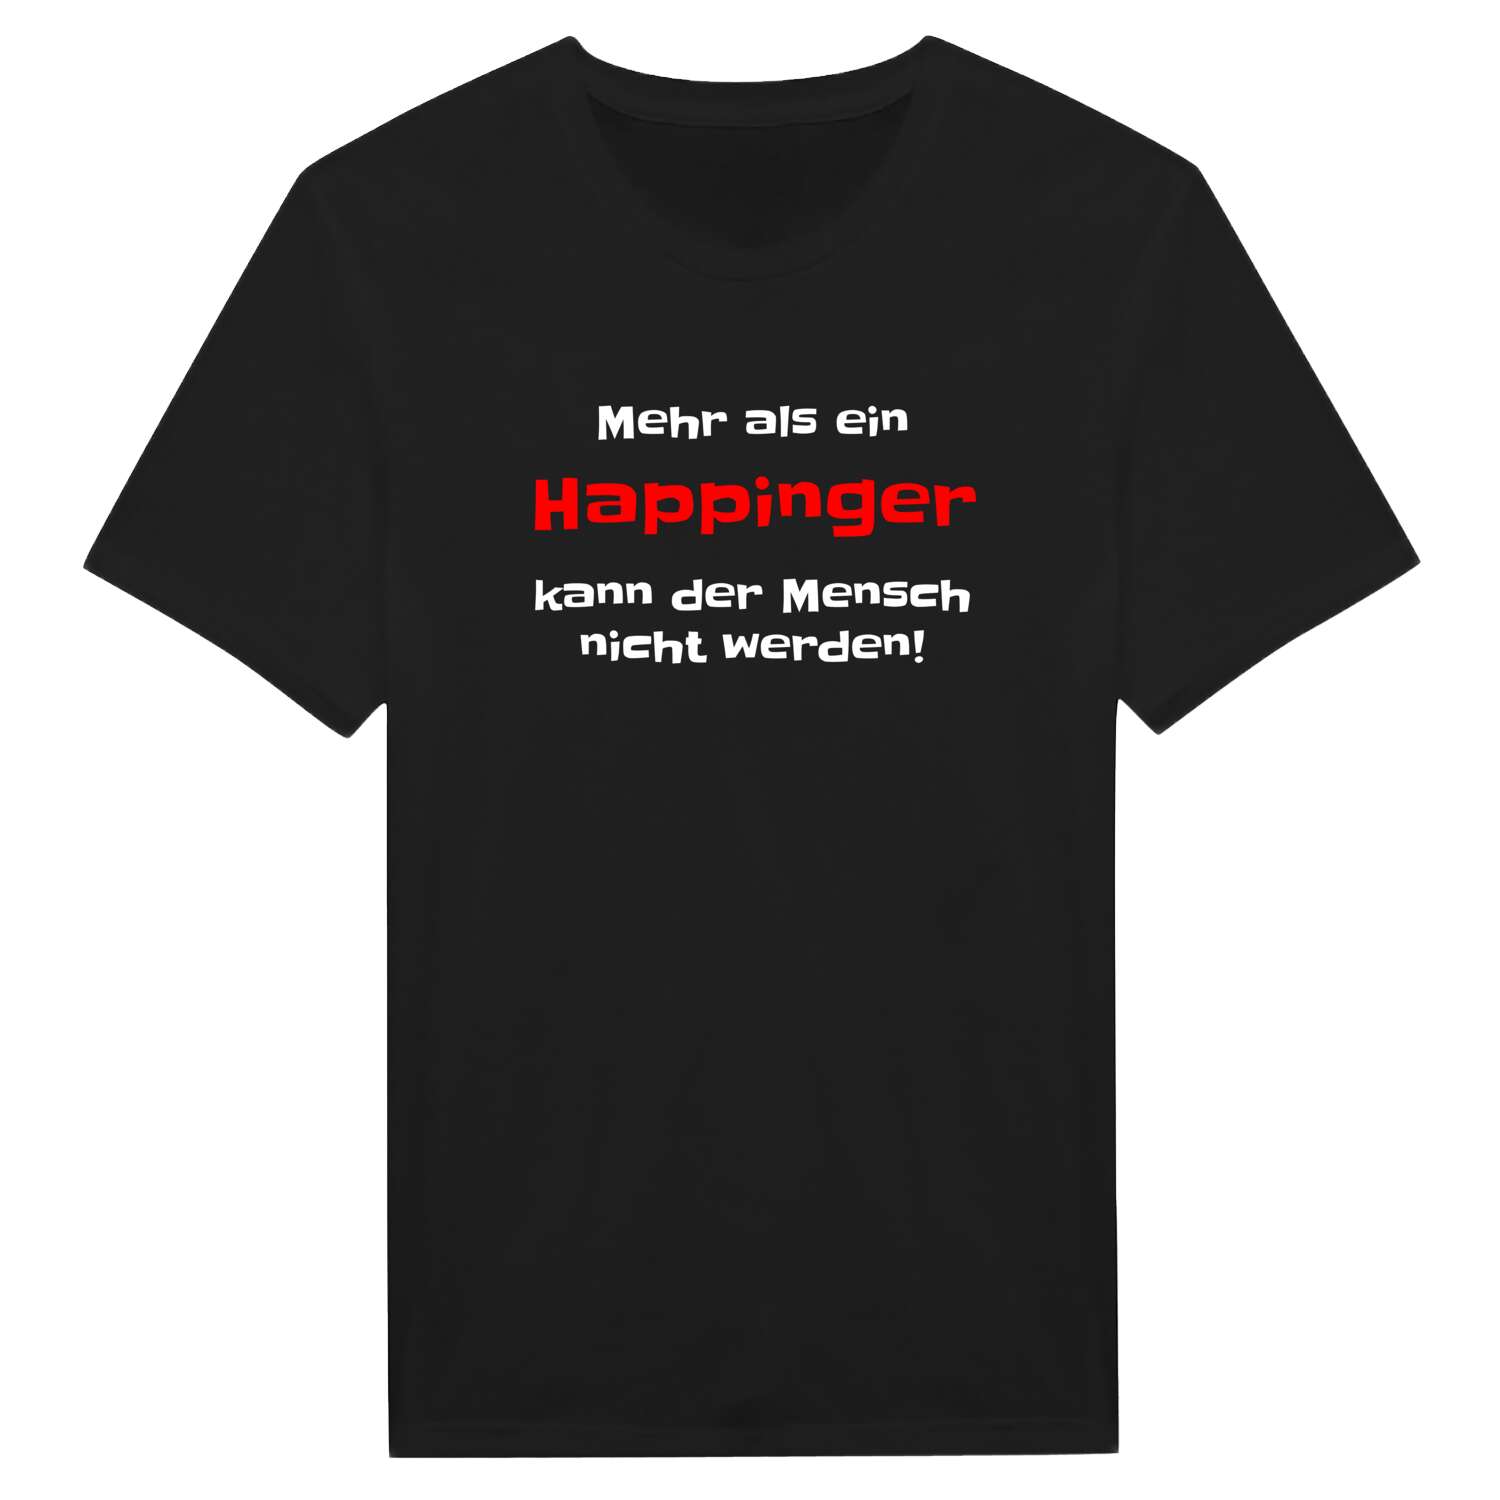 Happing T-Shirt »Mehr als ein«